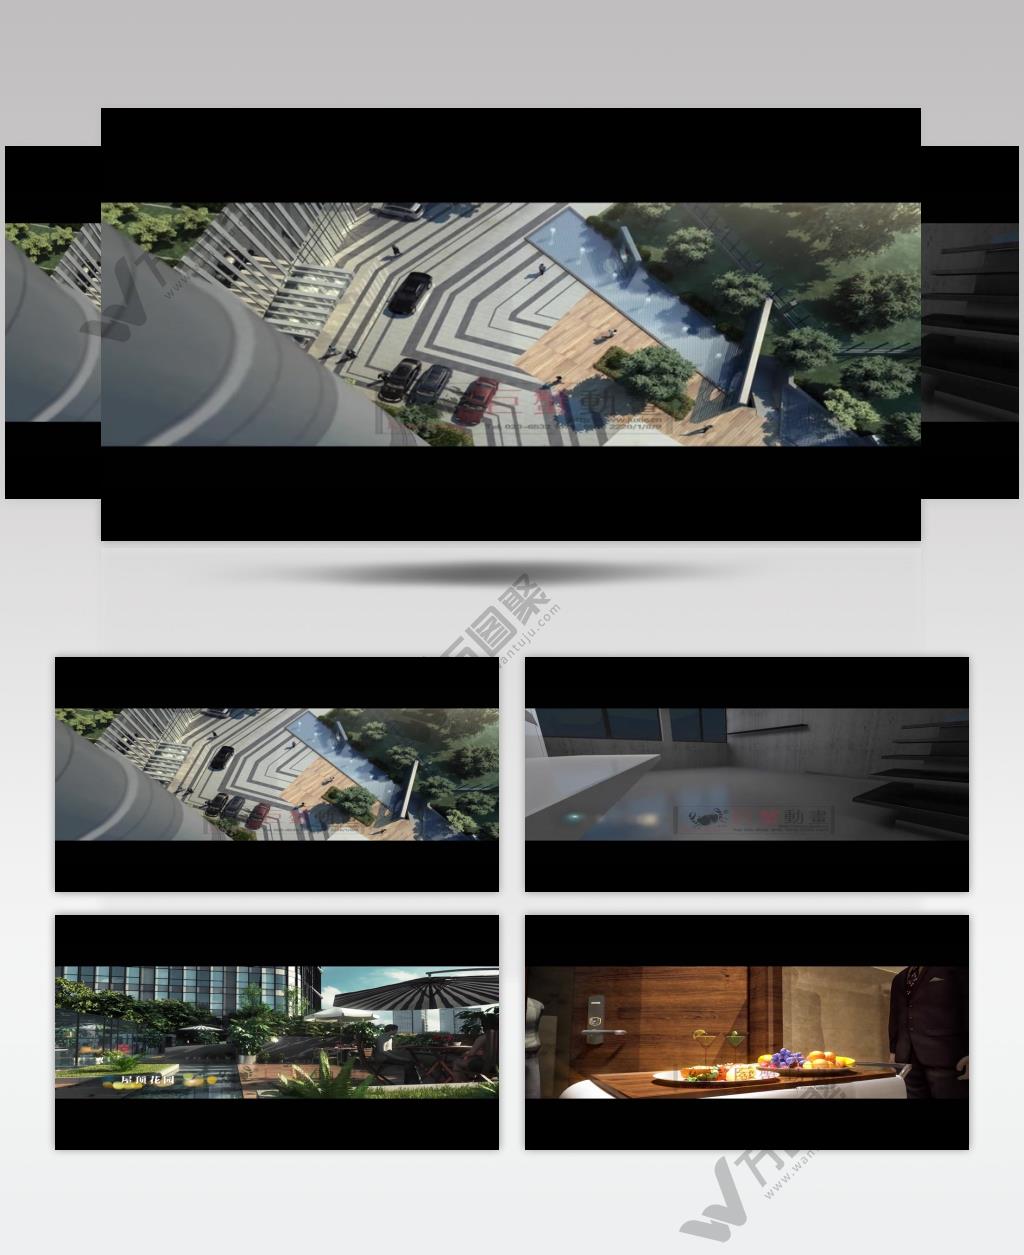 2观音桥COSMO_batch建筑动画三维动画房地产动画3d动画视频